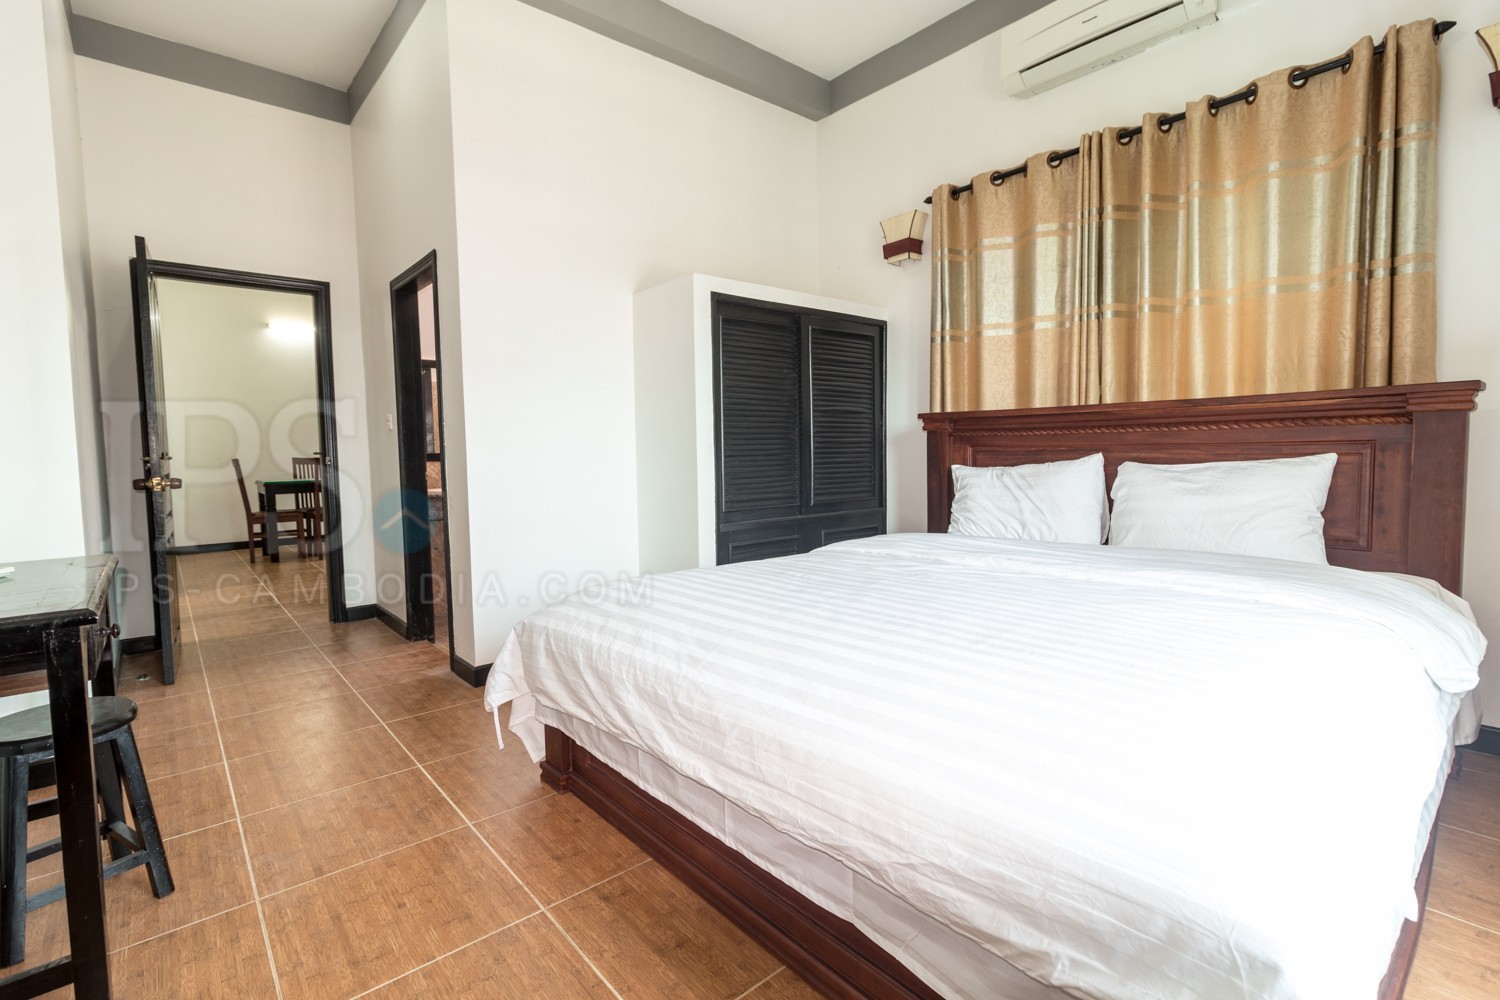 10 Bedroom House For Sale - Svay Dangkum, Siem Reap